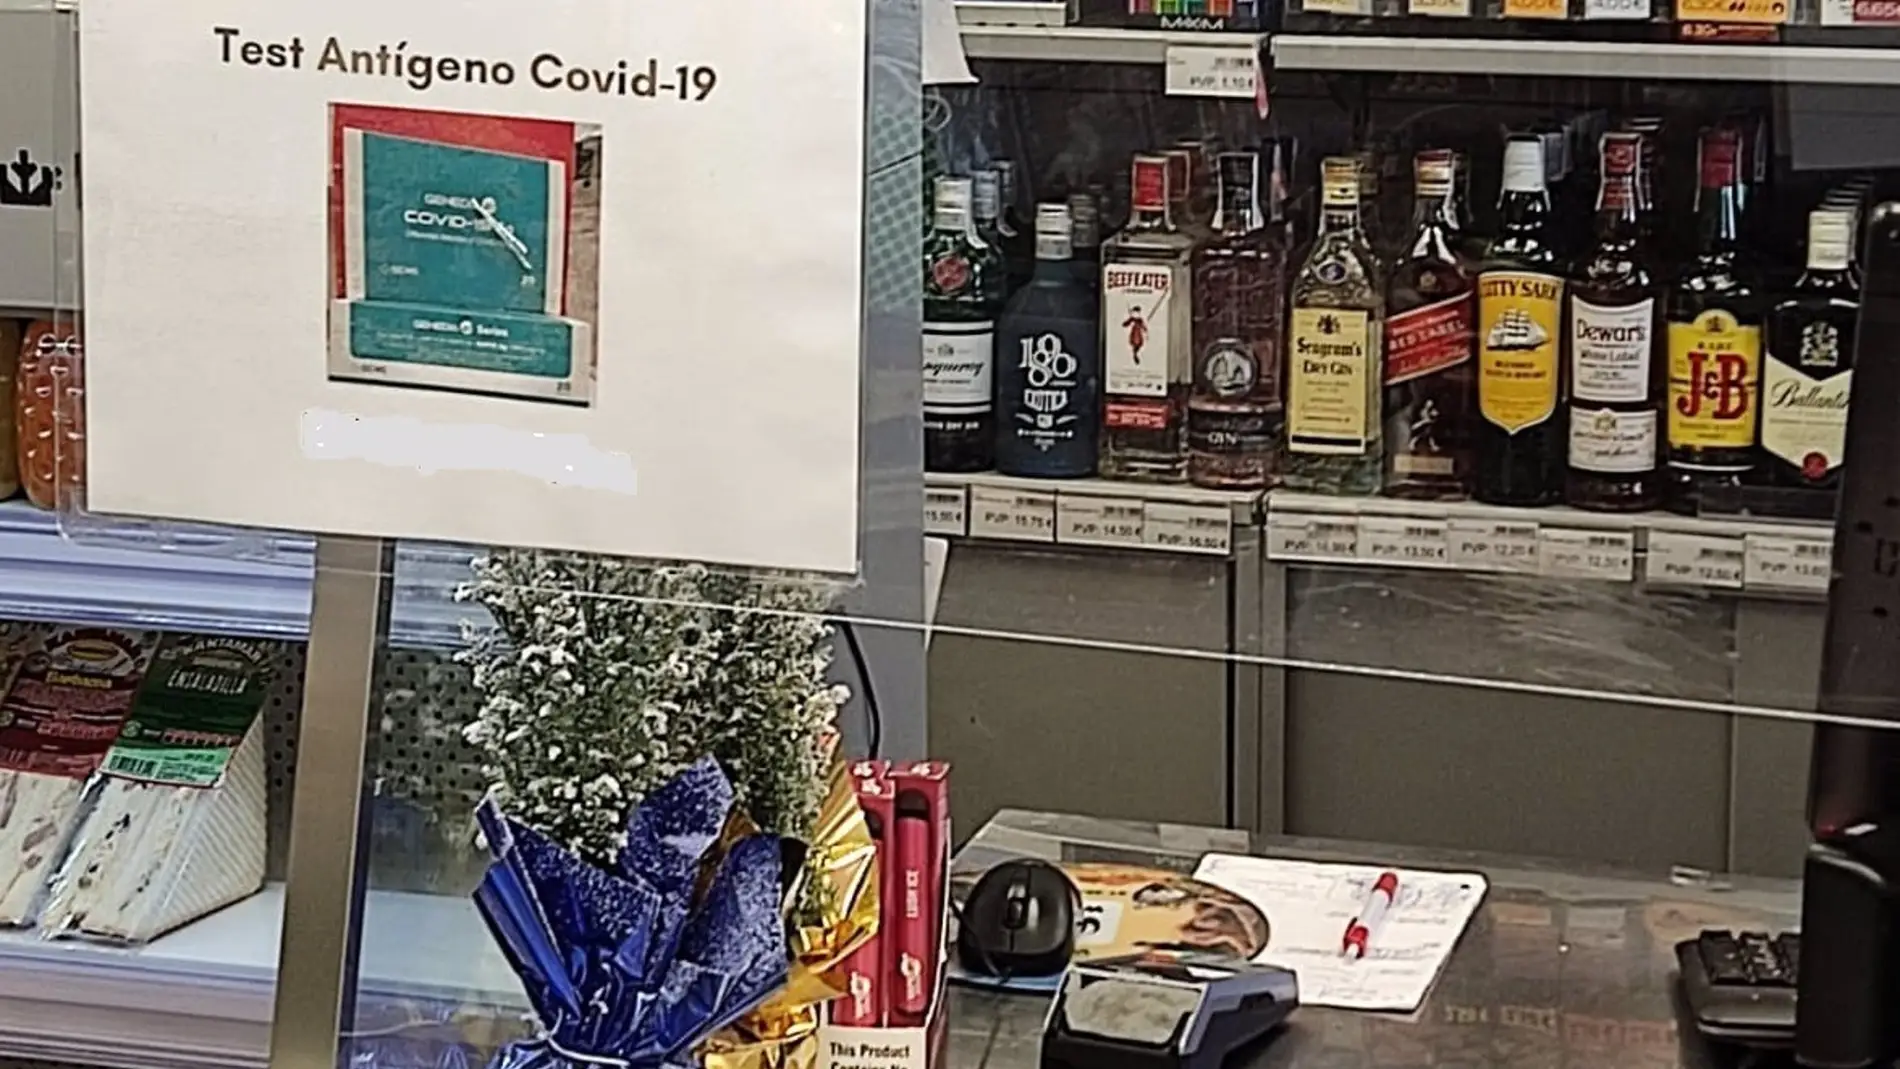 La Guardia Civil de Sevilla rastrea establecimientos donde venden test de antígenos sin autorización